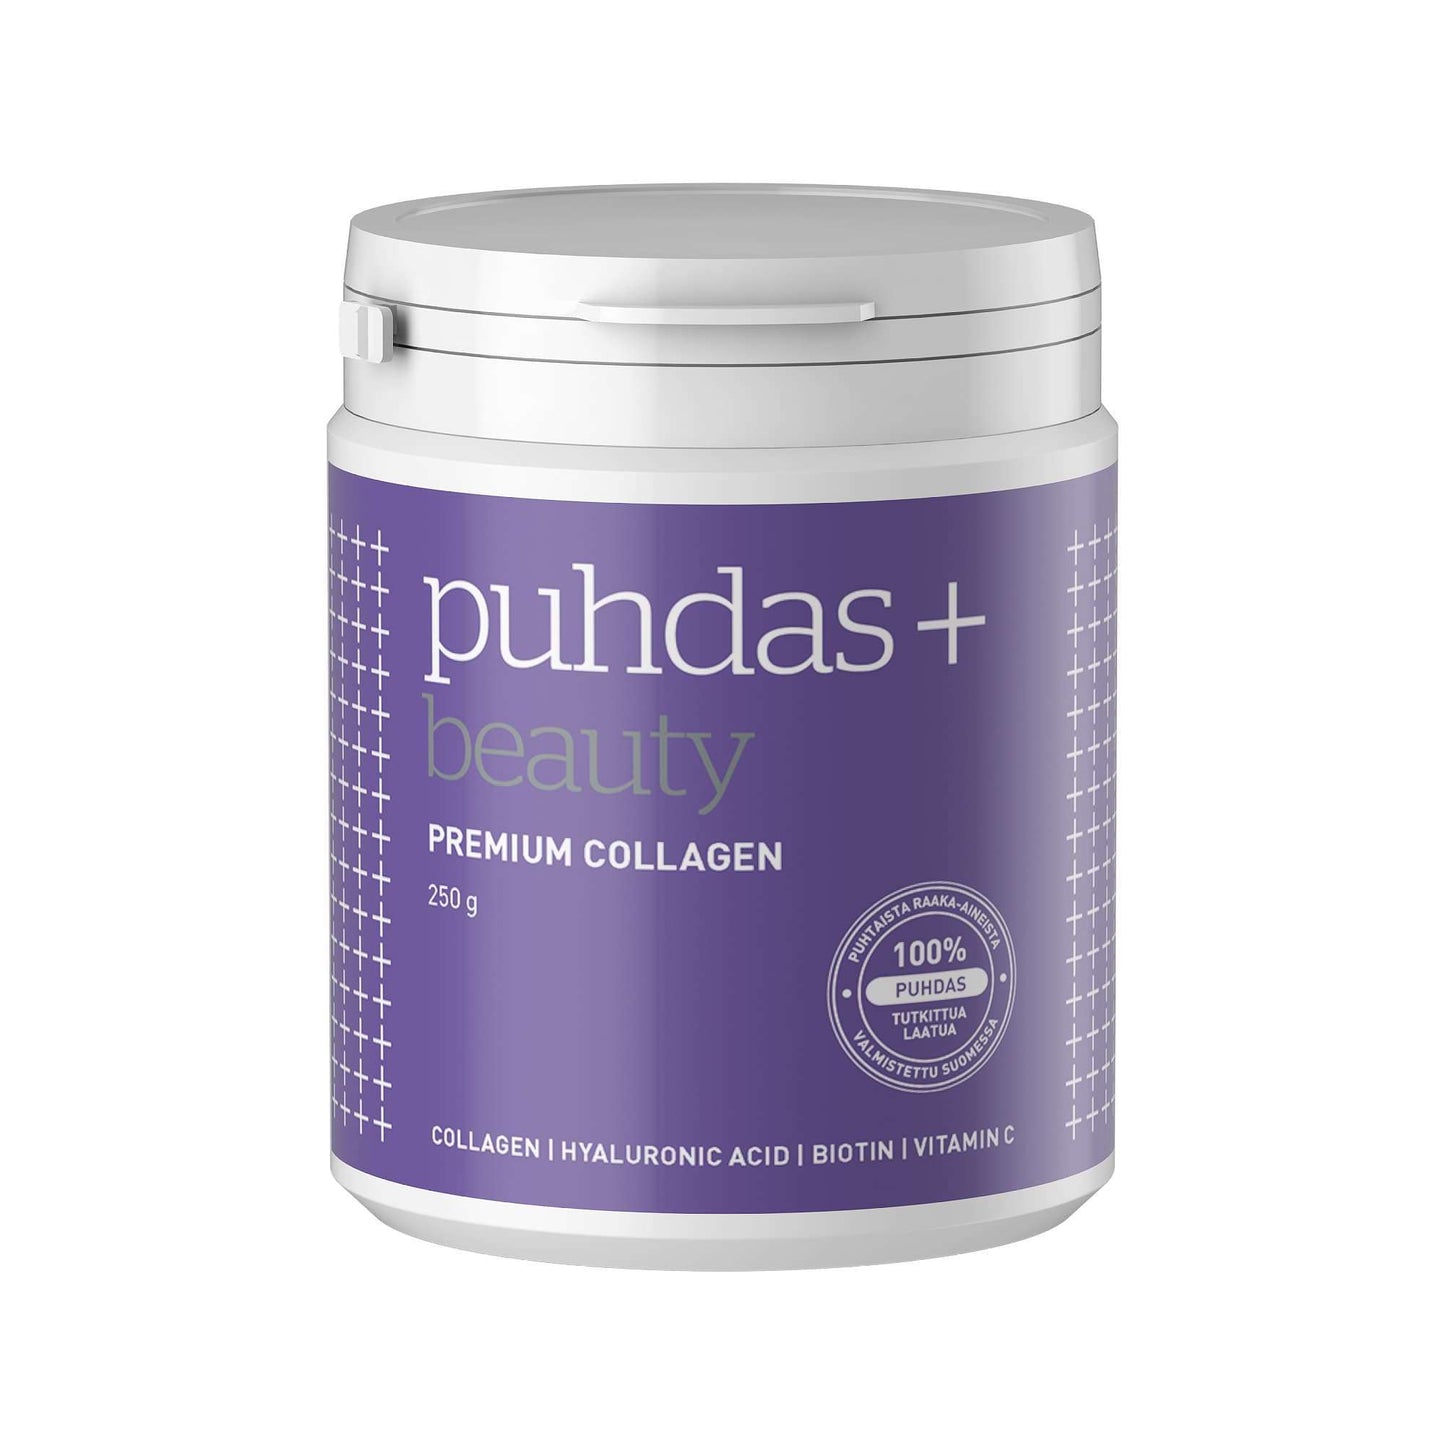 Puhdas+ Beauty Premium Collagen